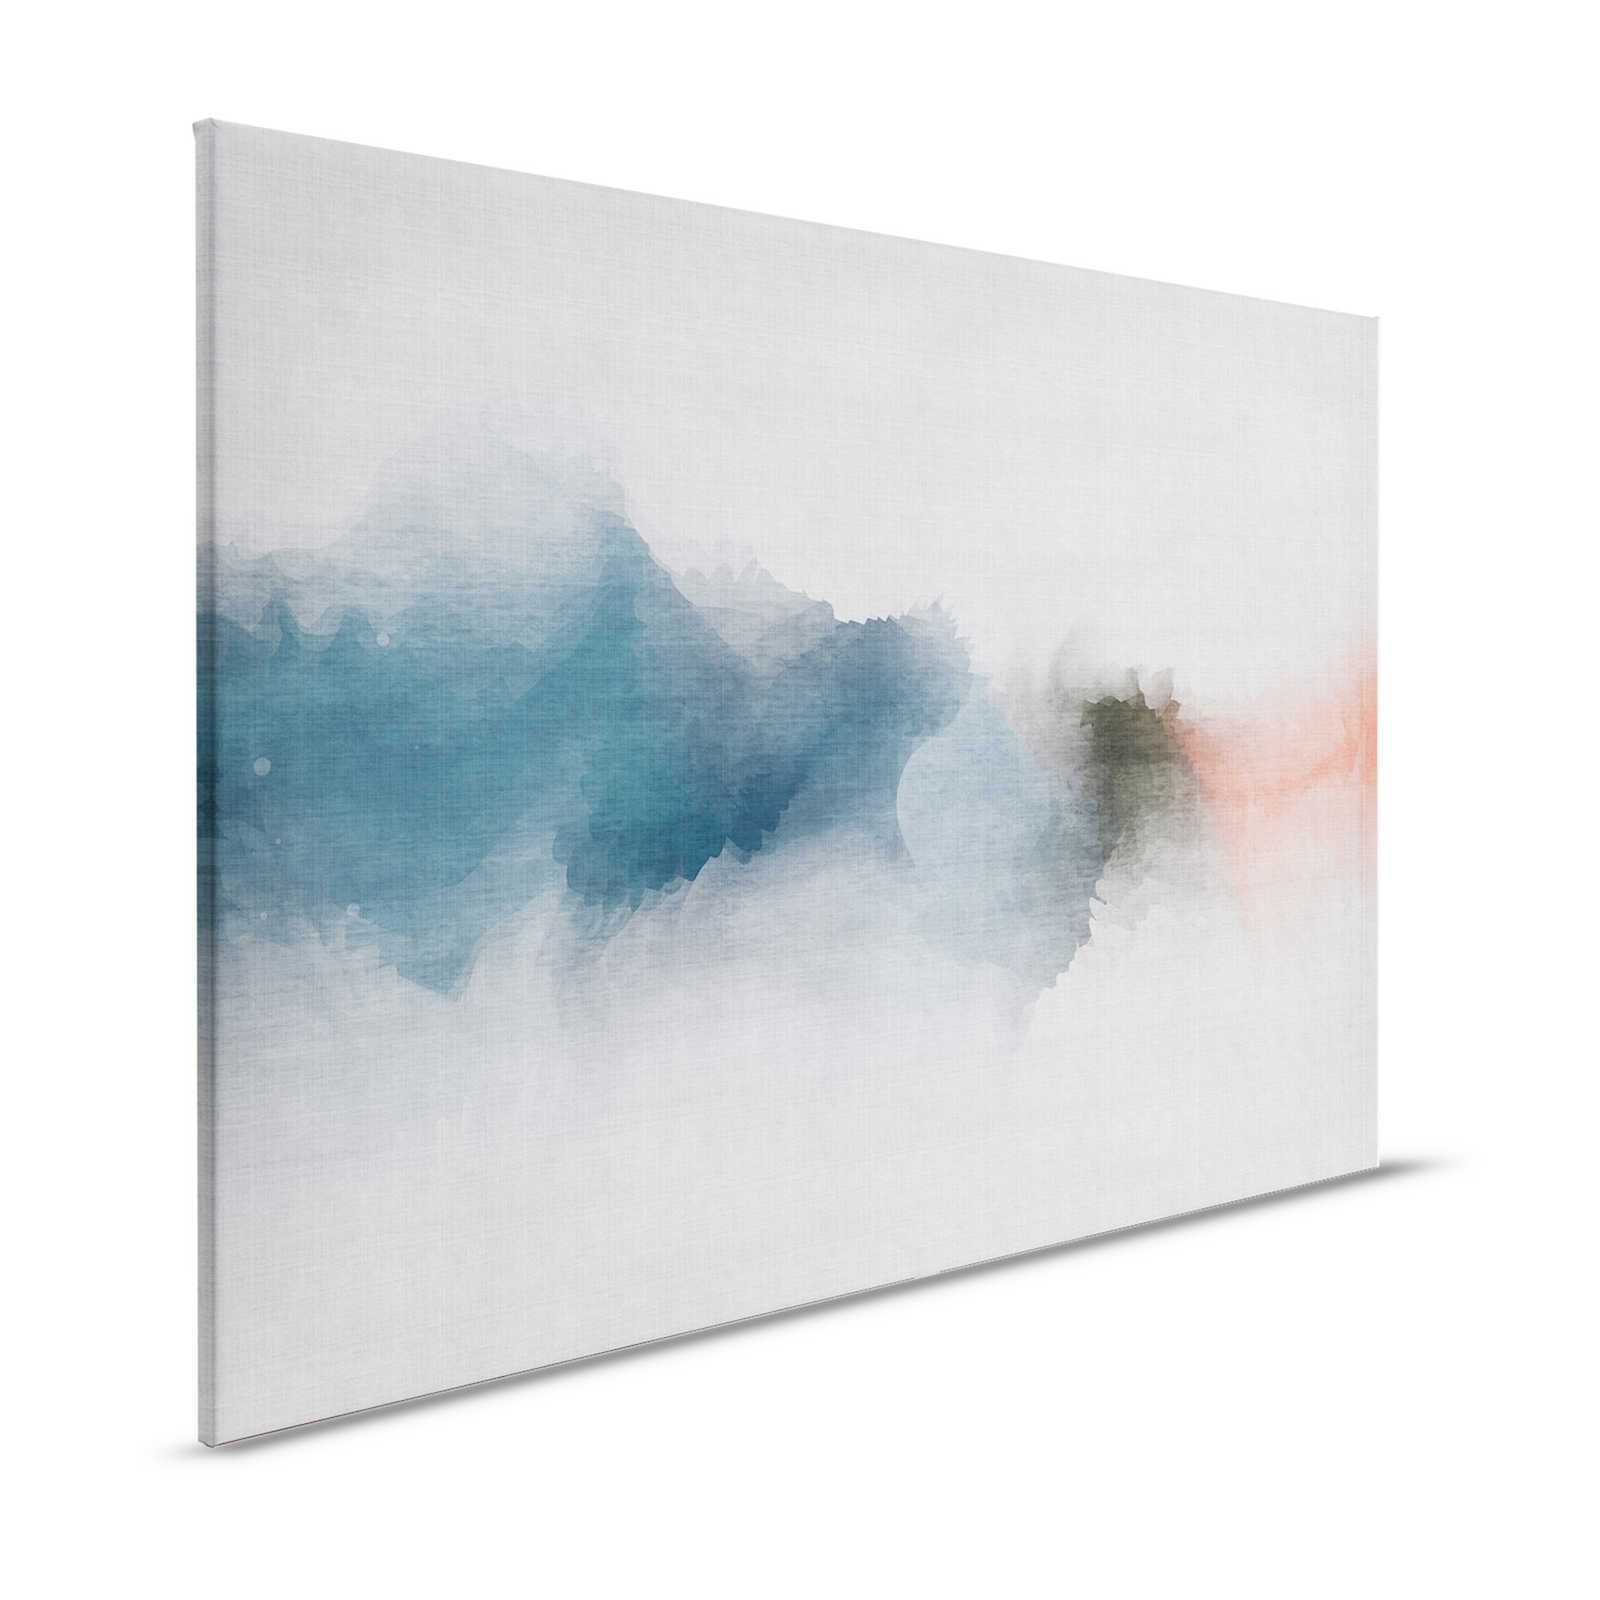 Daydream 1 - Minimalistisches Leinwandbild im Aquarell Stil- Naturleinen Optik – 1,20 m x 0,80 m
